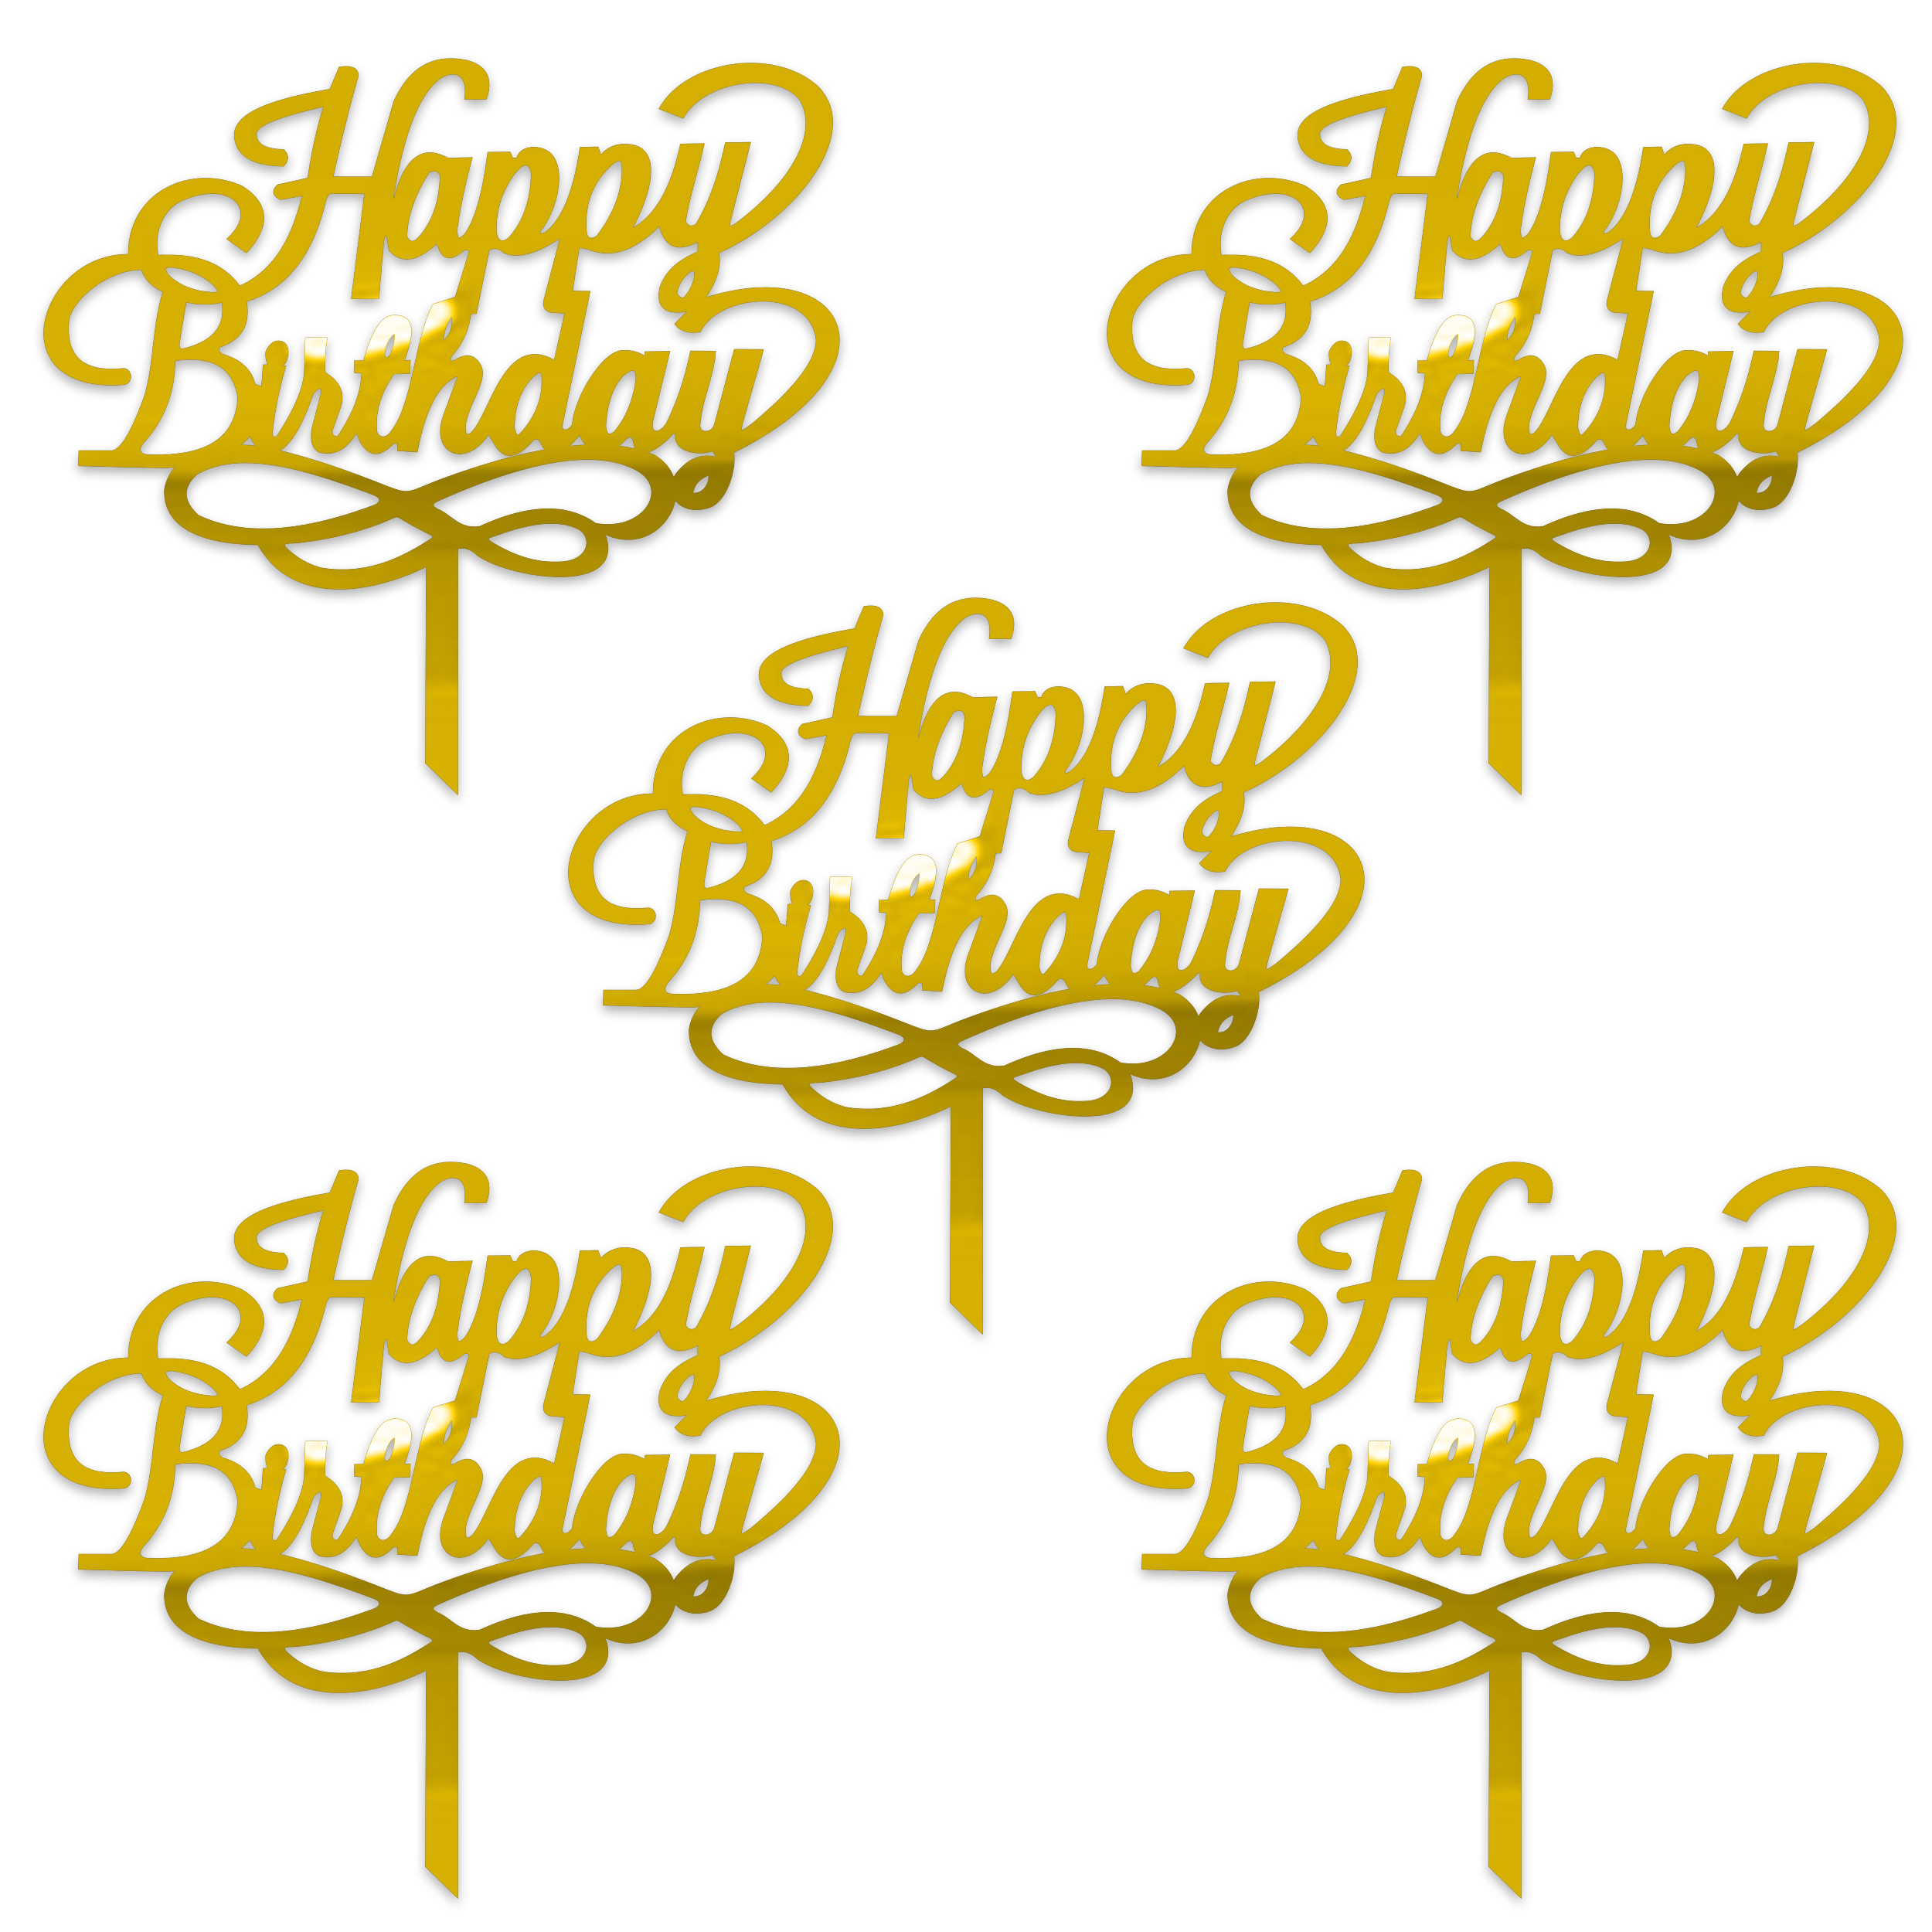 تاپر دکوماتوس طرح Happy birthday کد T30 بسته 5 عددی